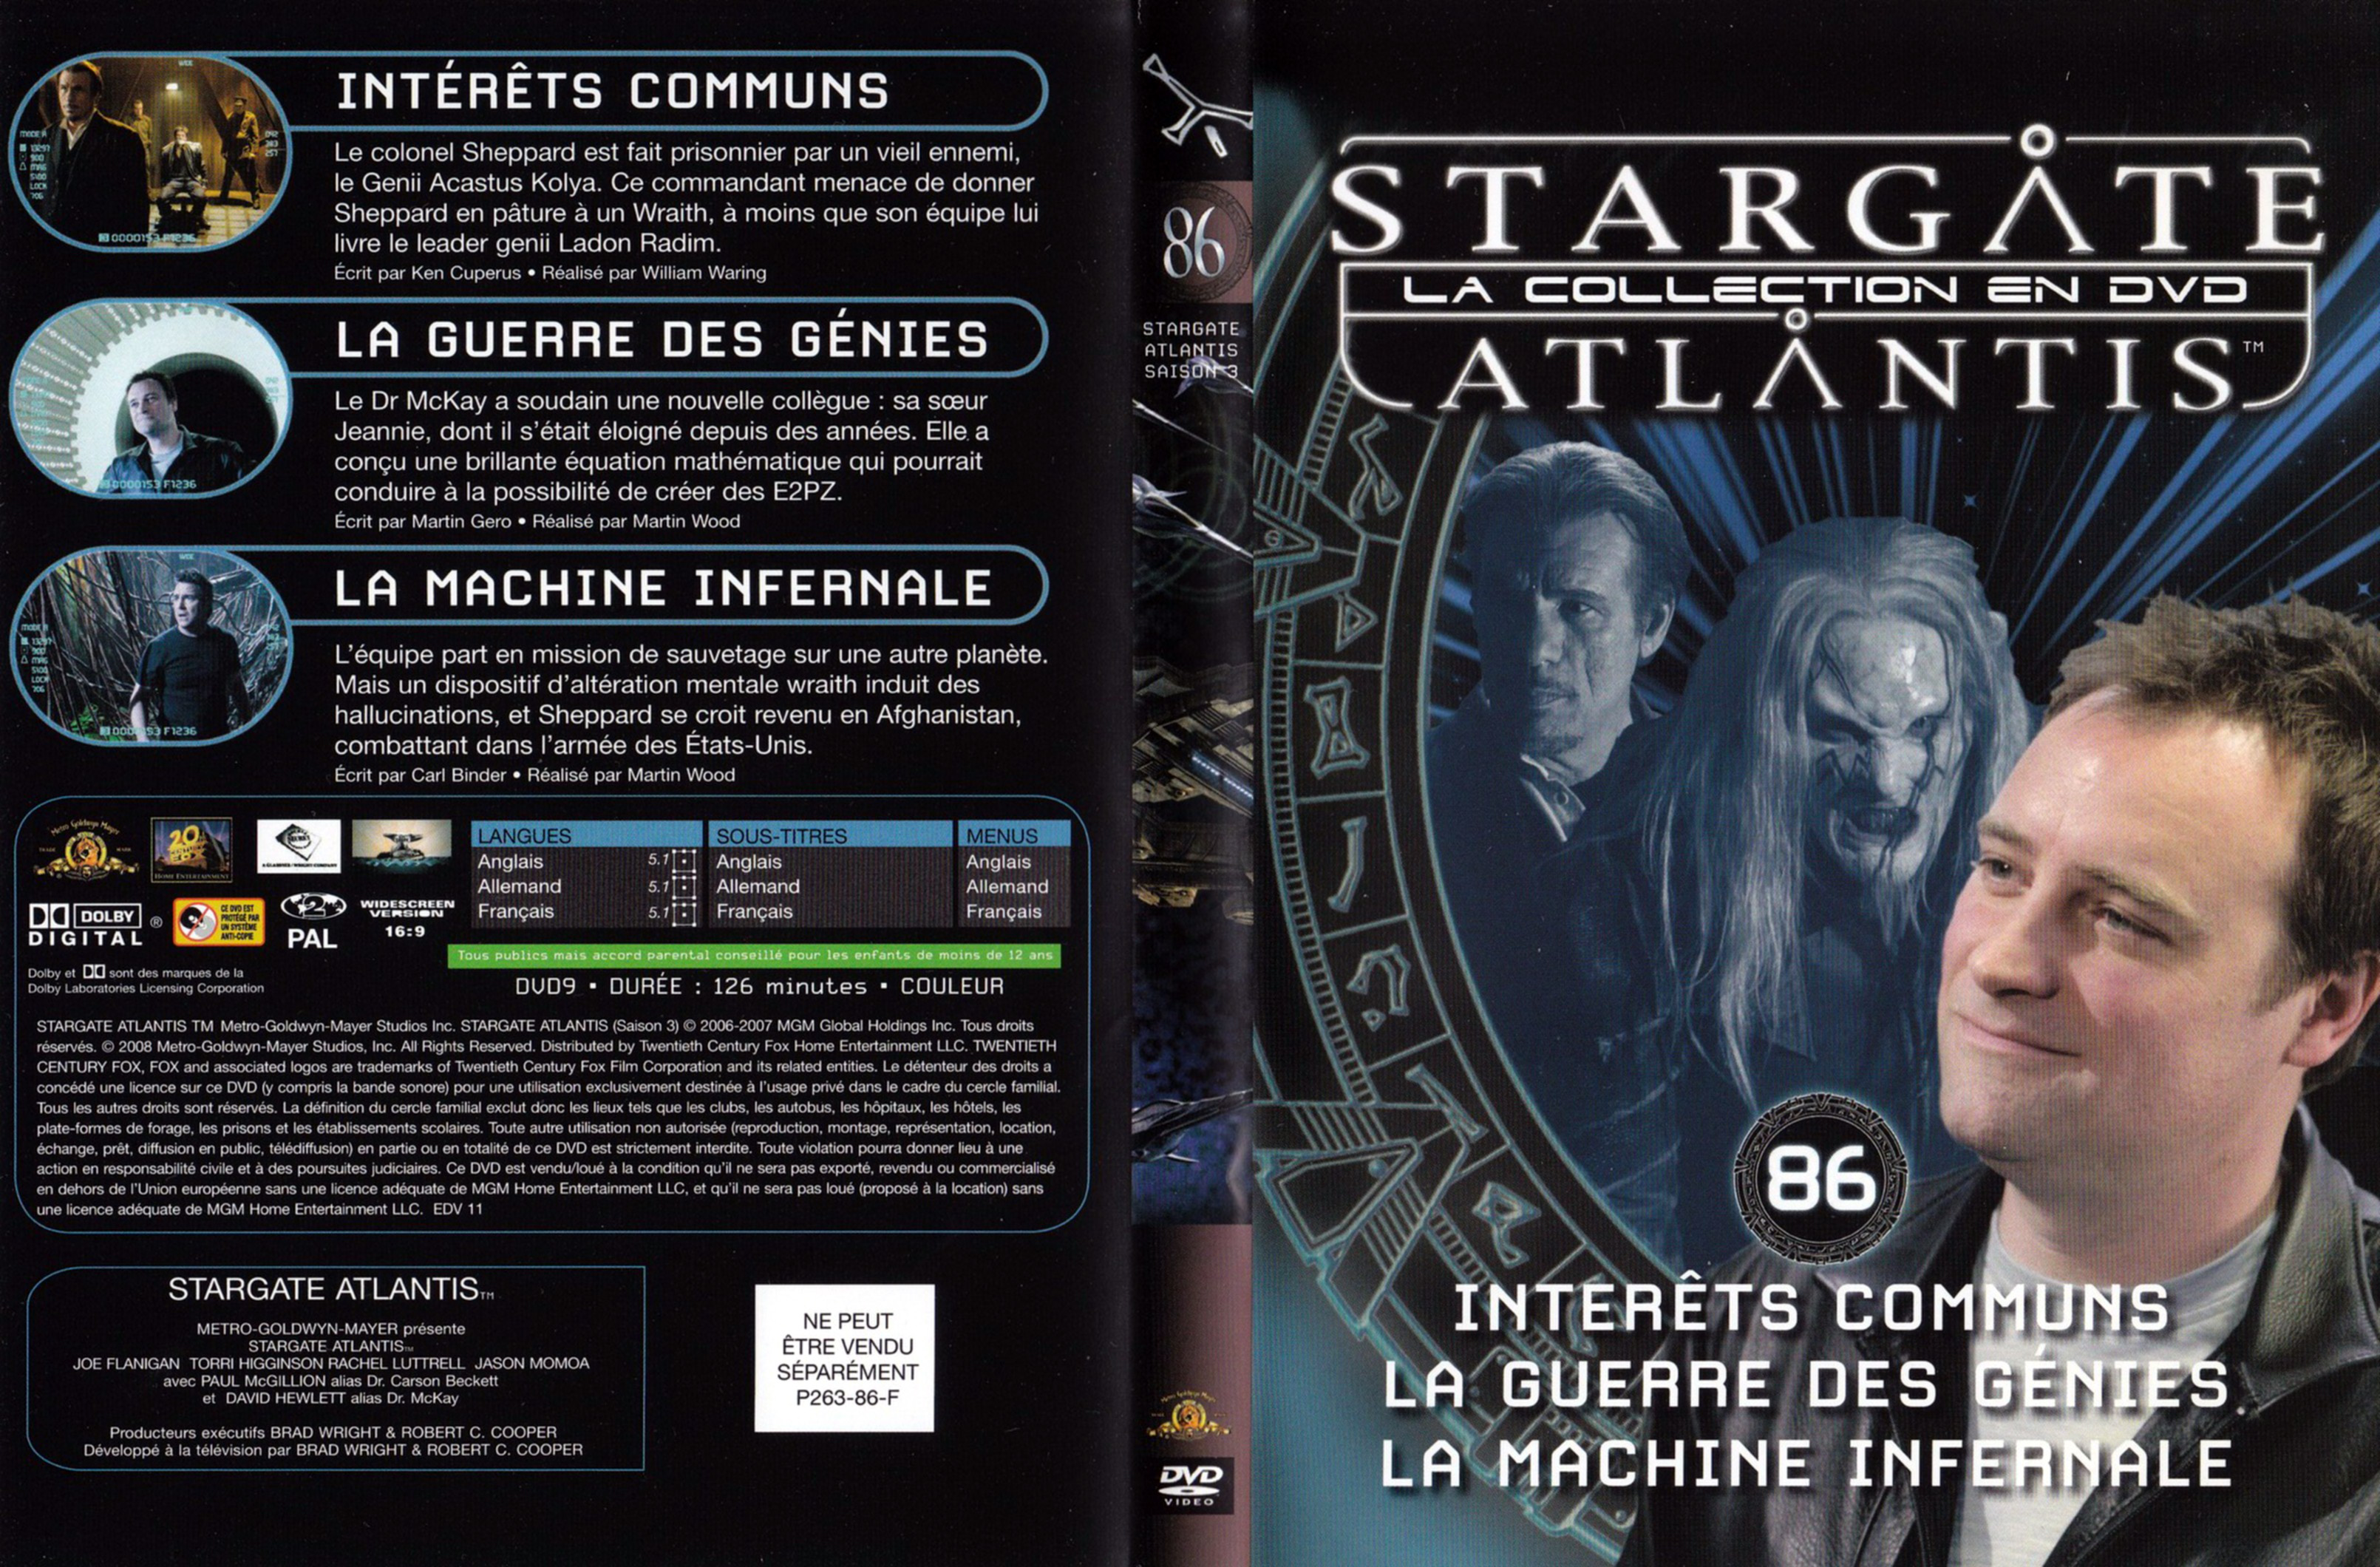 Jaquette DVD Stargate SG1 Atlantis Saison 3 vol 86